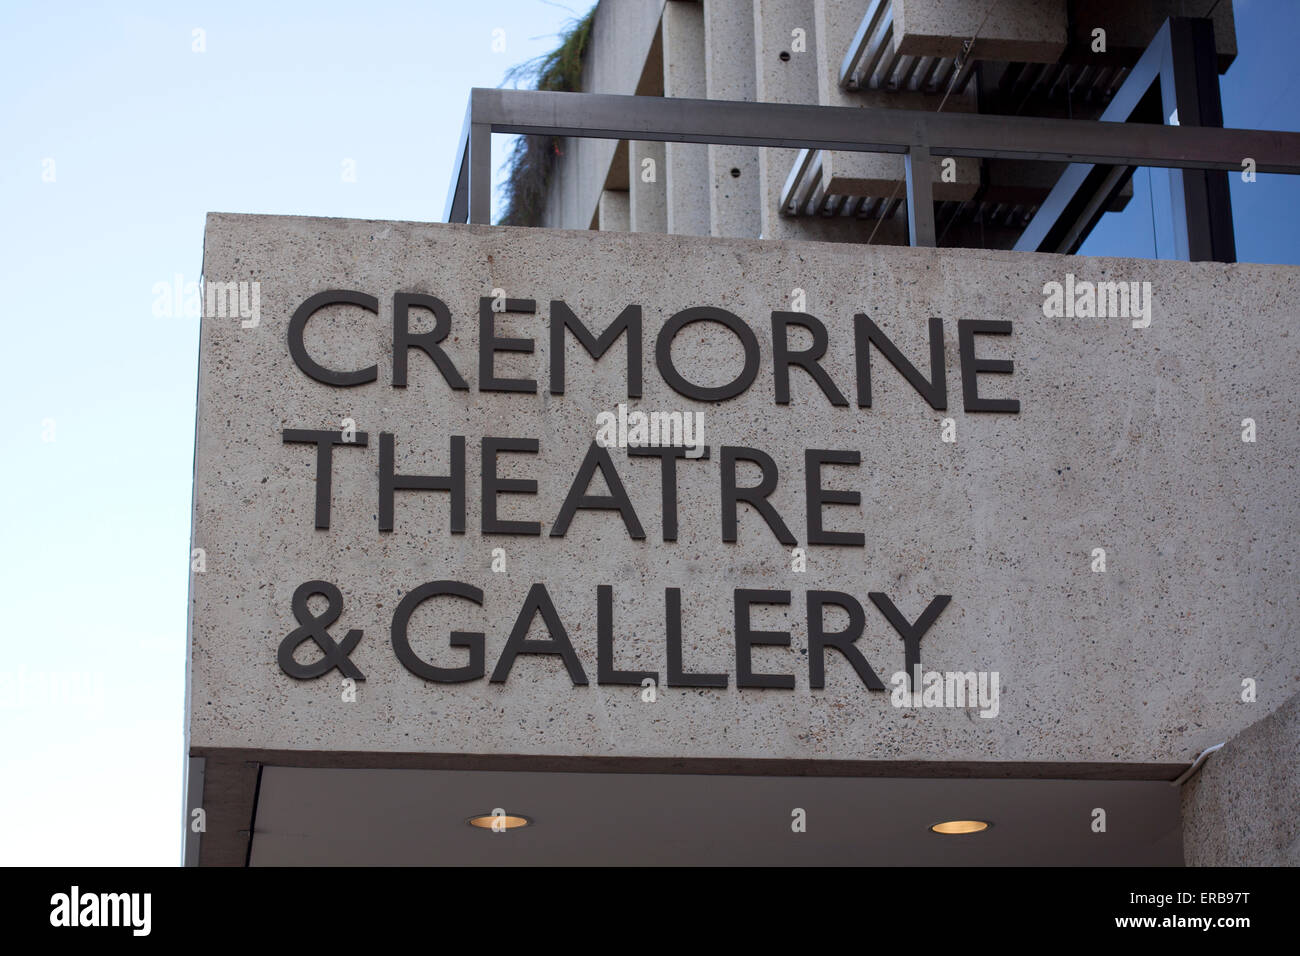 Cremorne Theatre Brisbane Stock Photo